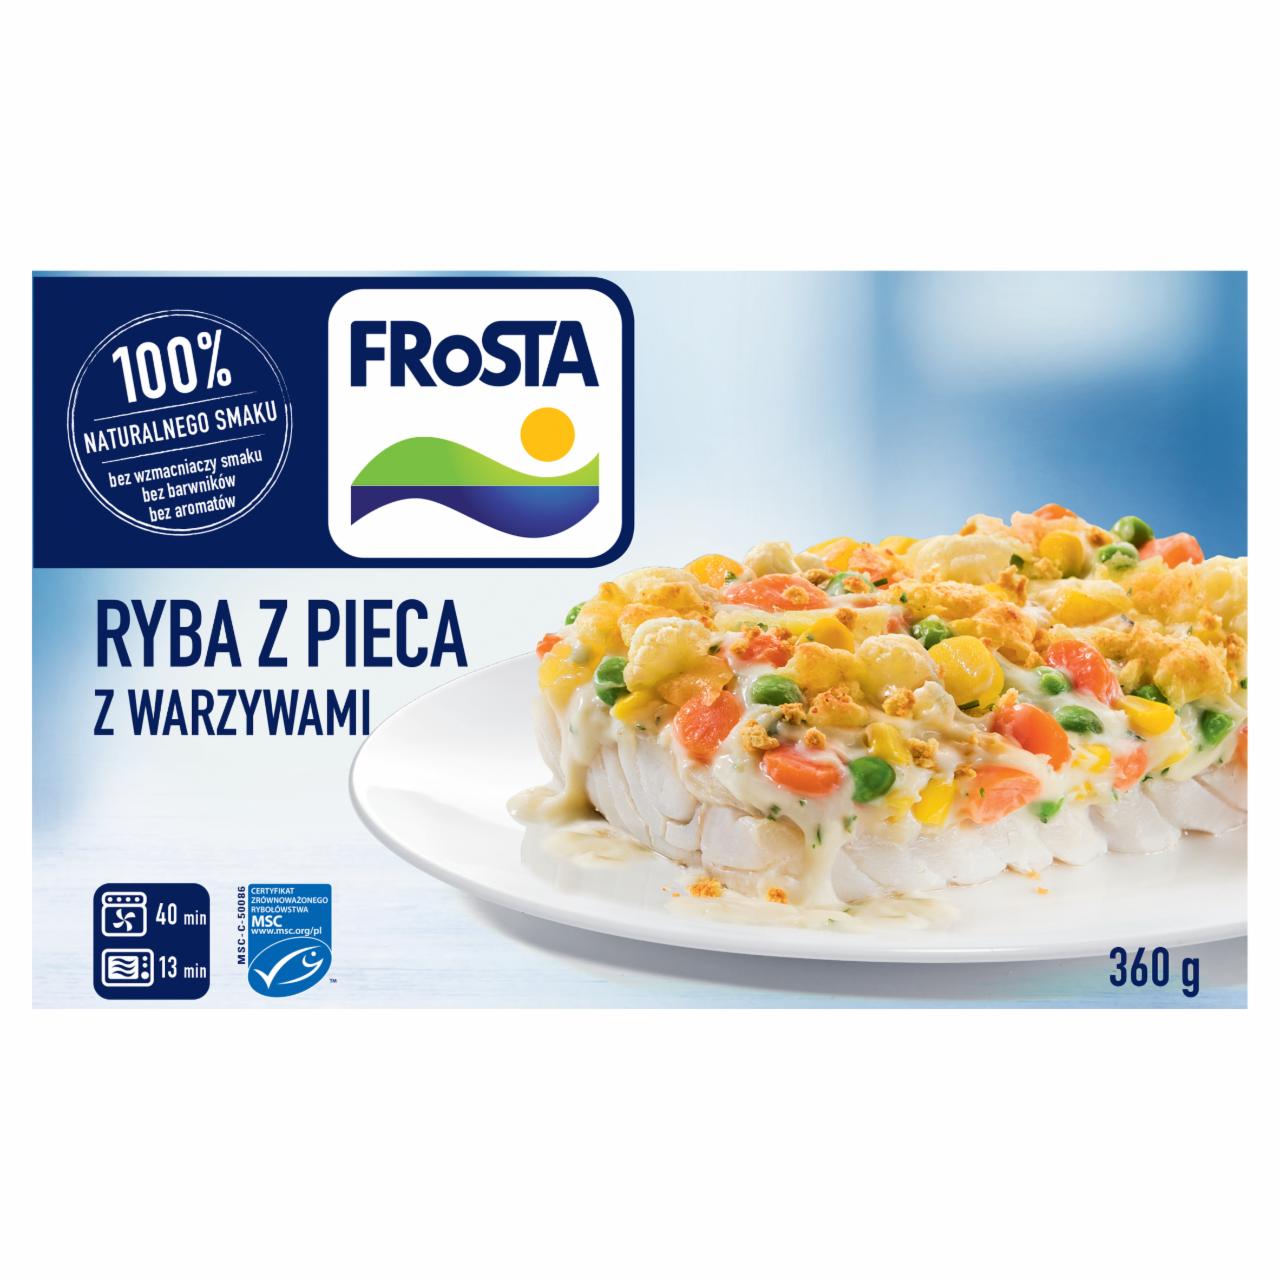 Zdjęcia - FRoSTA Ryba z pieca z warzywami 360 g